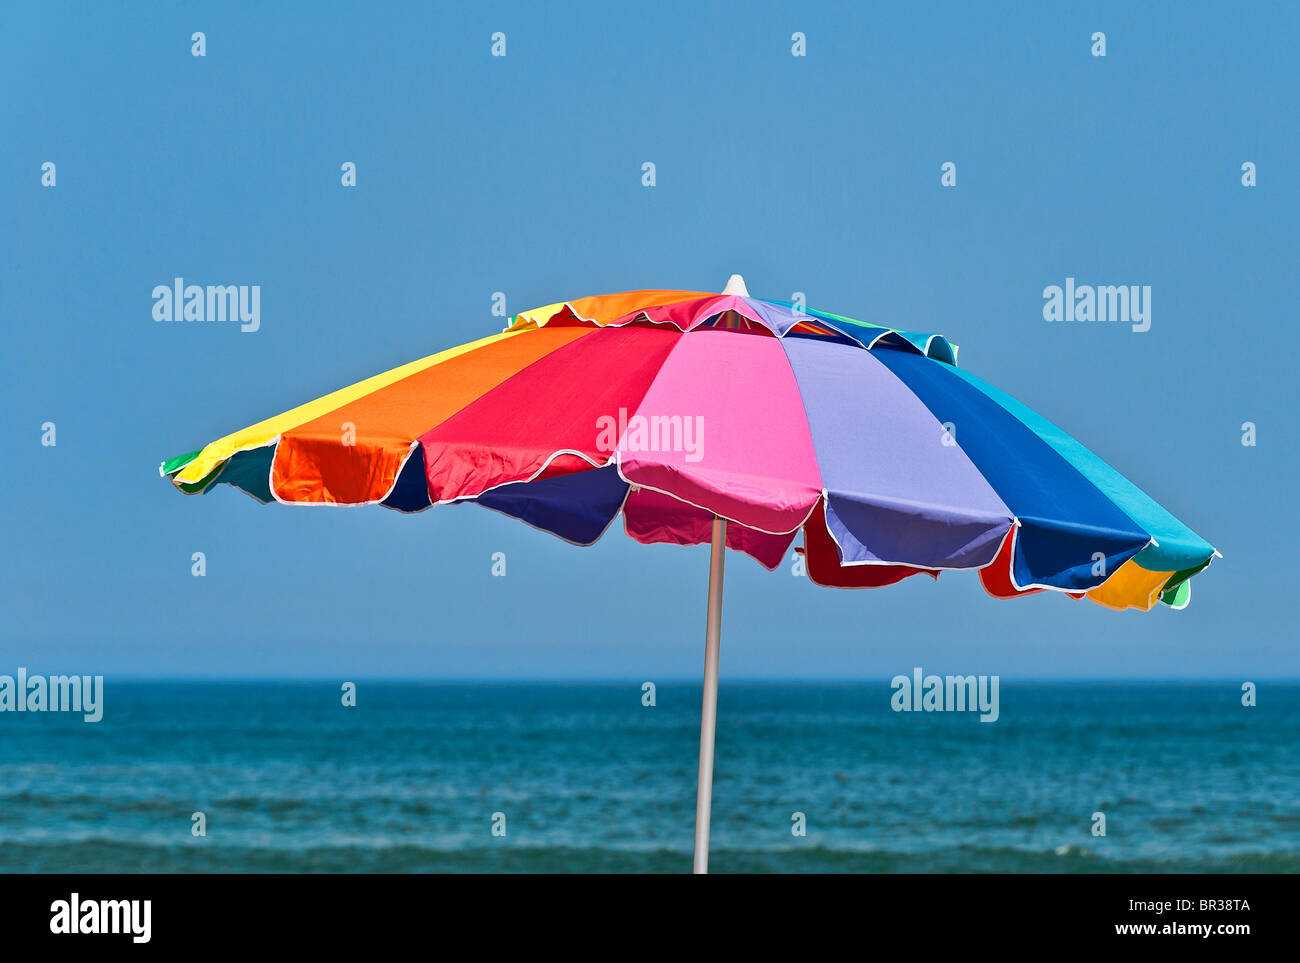 Tropischer Sonnenschirm am Strand Stockbild - Bild von ferien, blau:  16445001